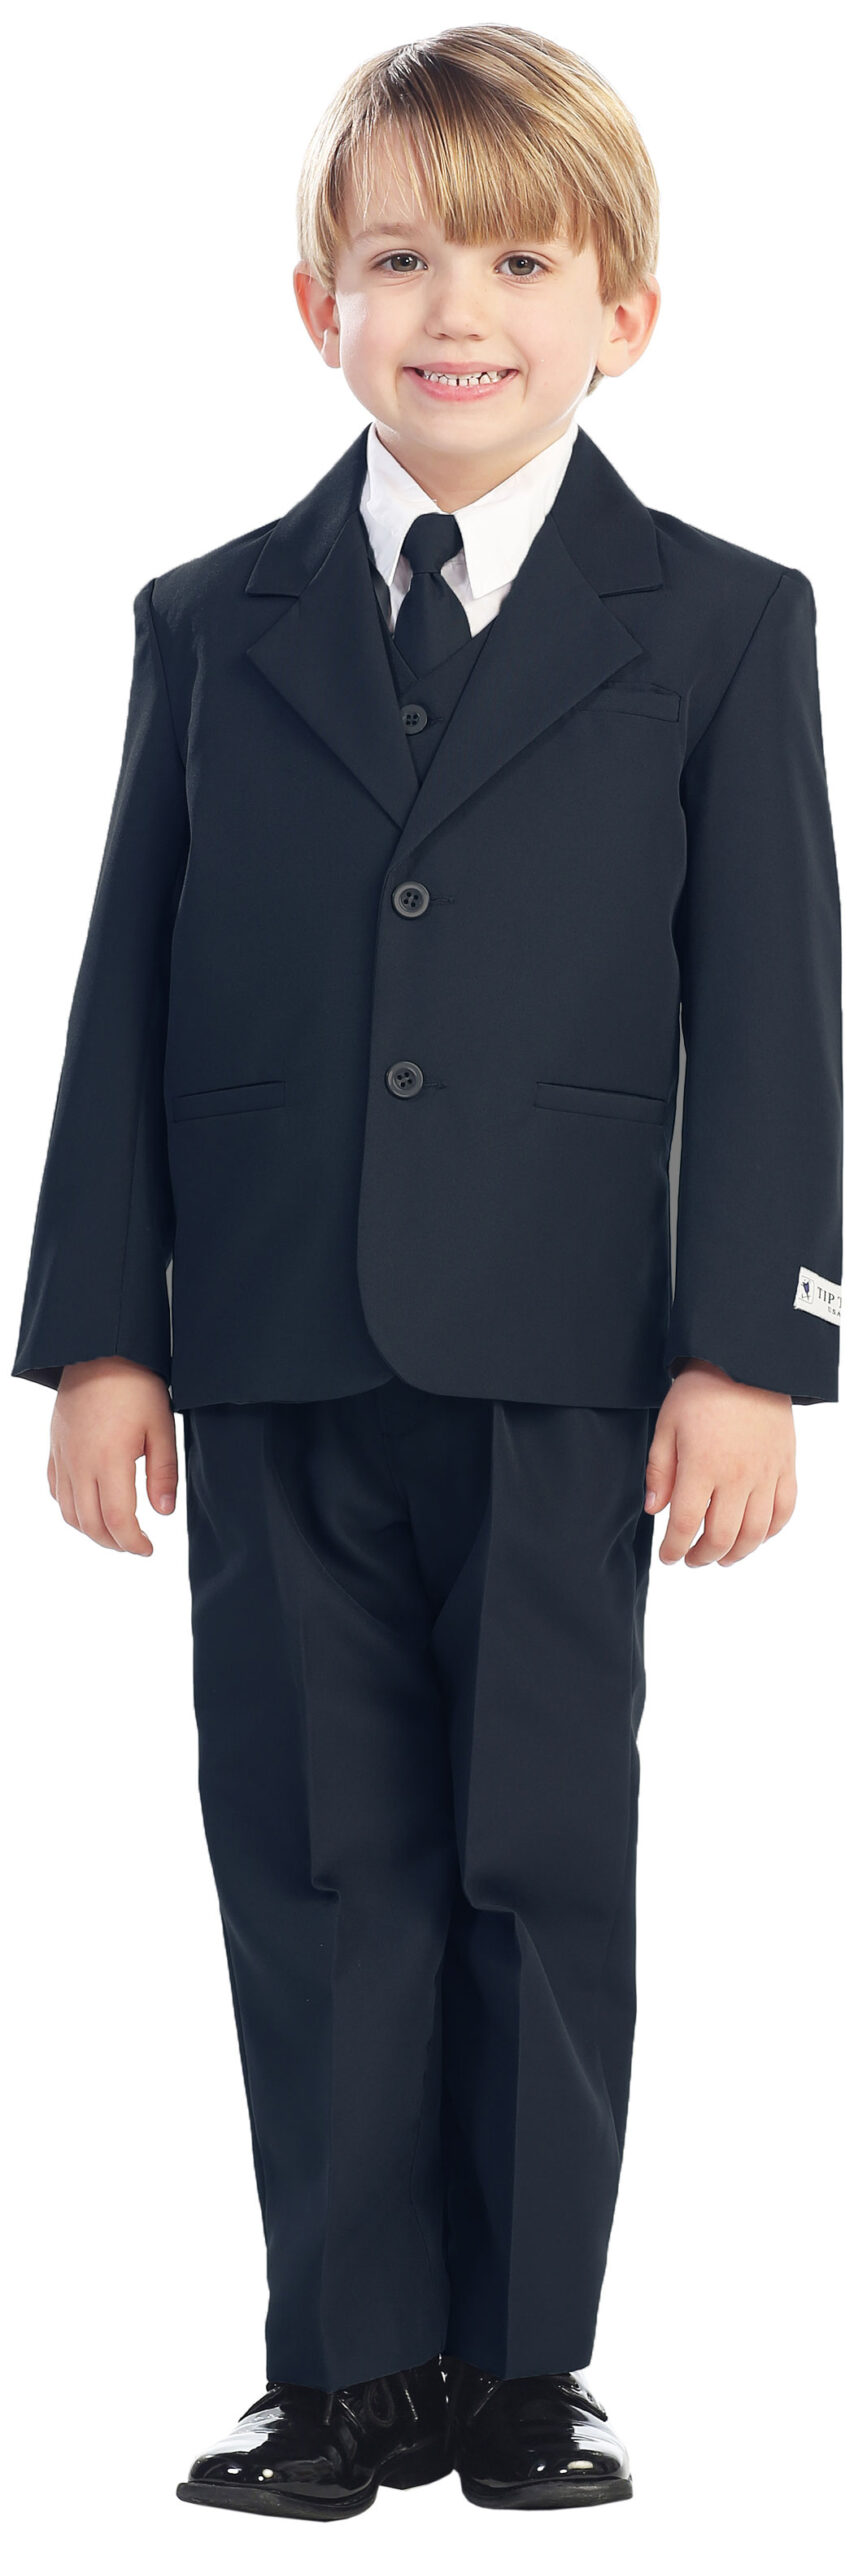 Avery Hill 5-Piece Boy's 2-Button Dress Suit Full-Back Vest - Navy Blue Size 7